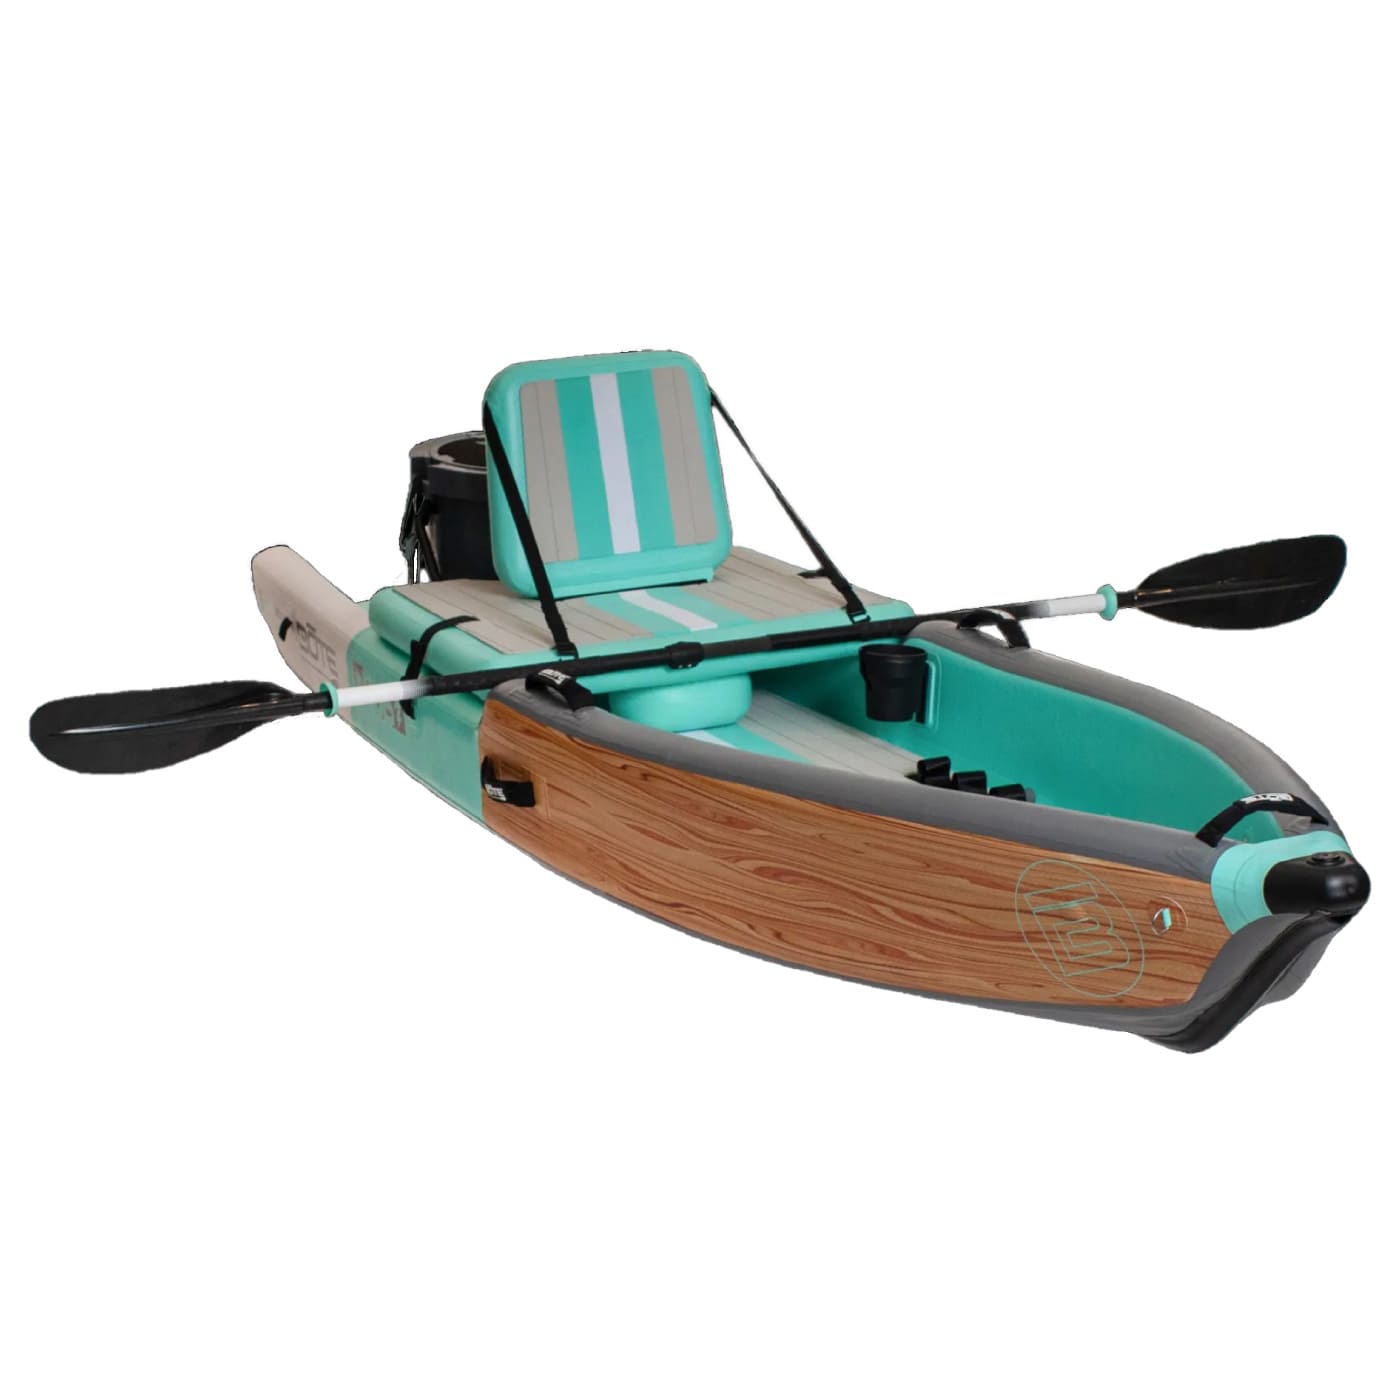 BOTE DEUS Aero Inflatable Kayak 11' 